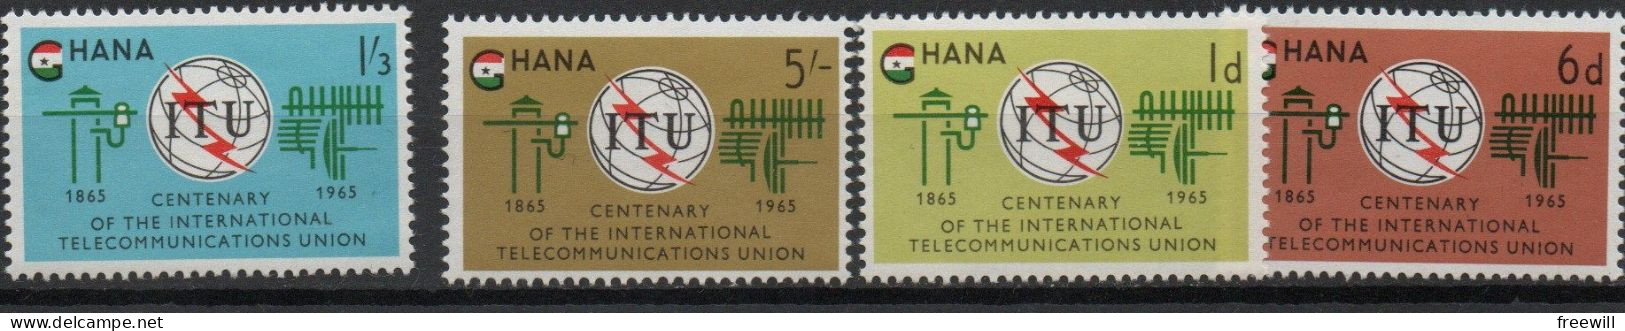 Union internationale des télécommunications - I.T.U.1965 XX